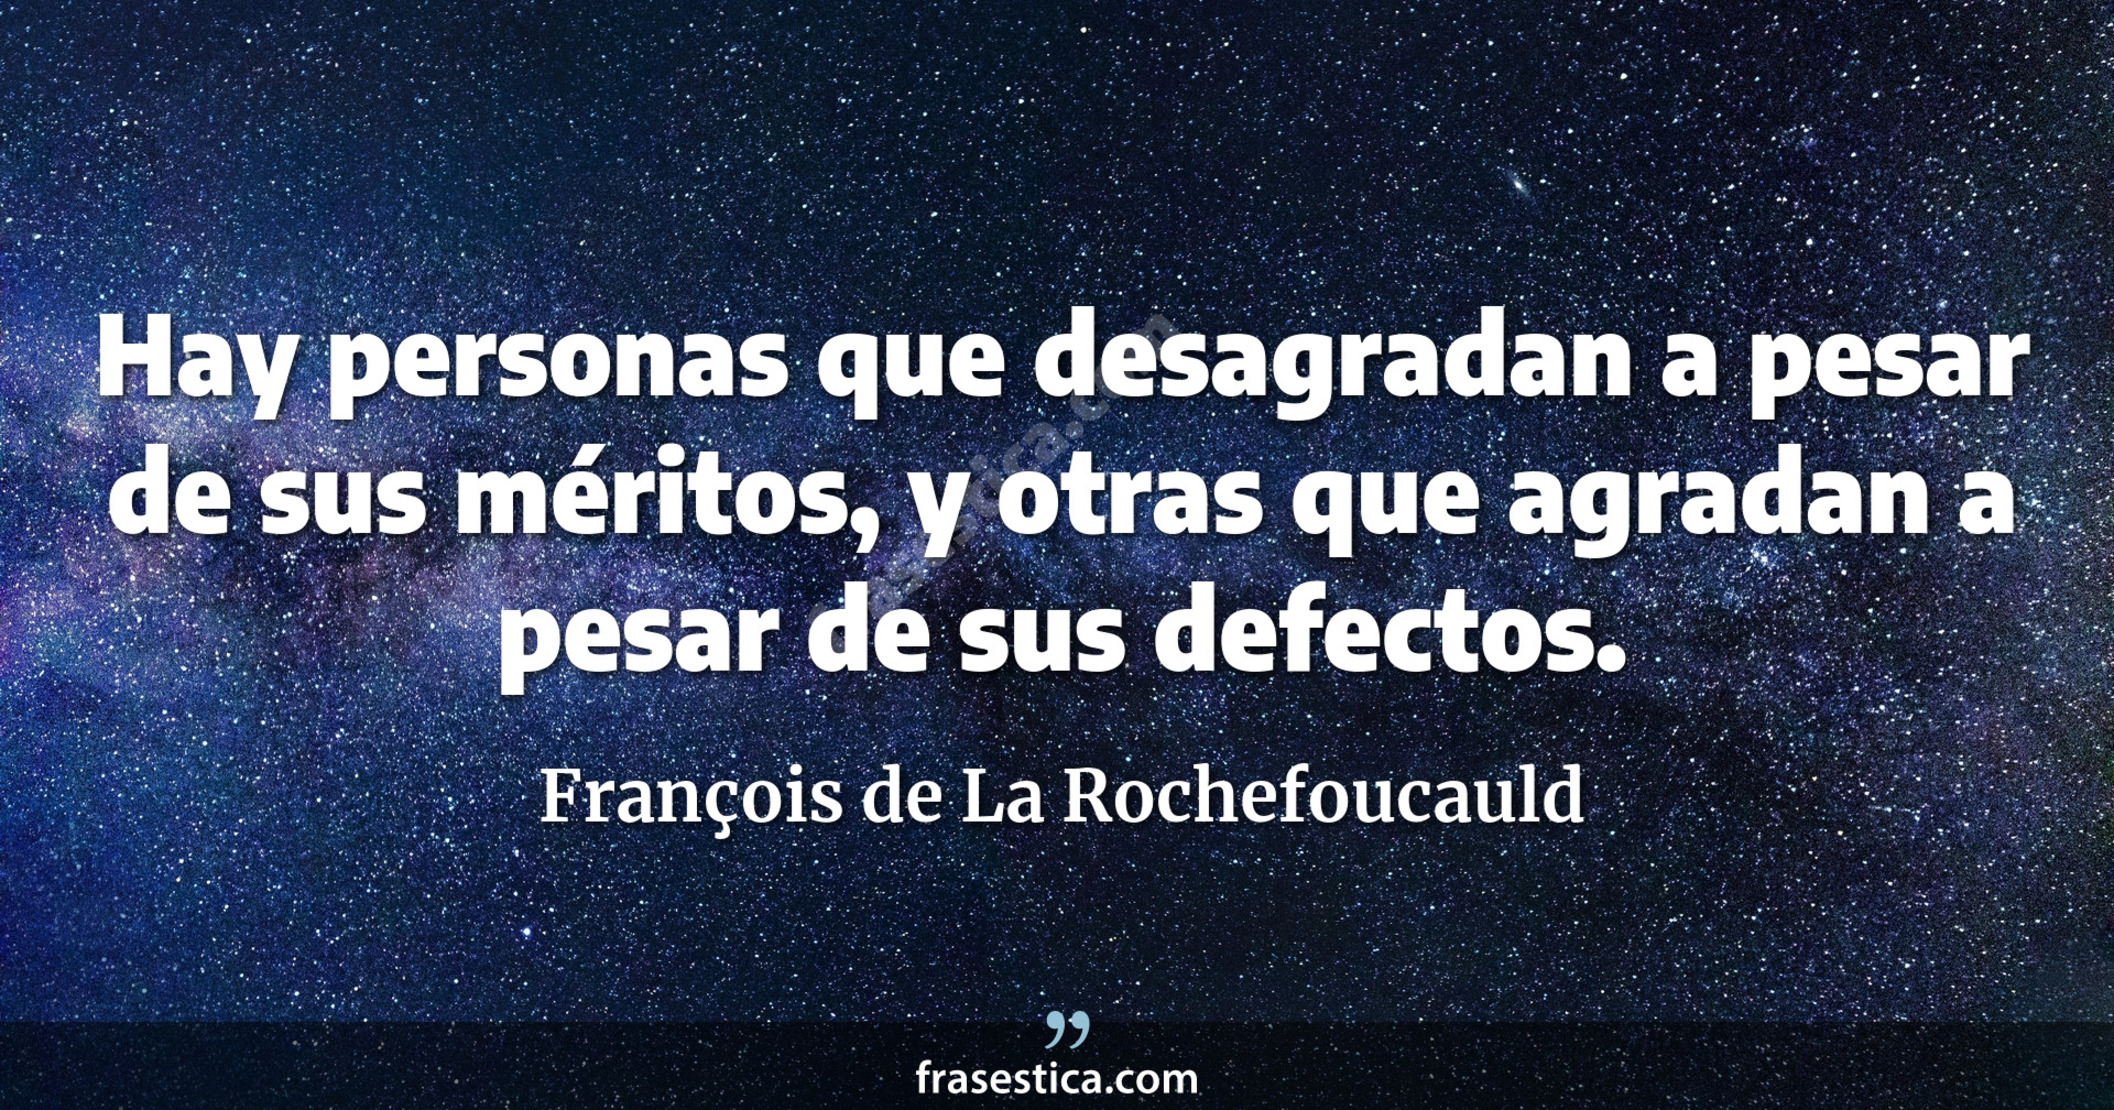 Hay personas que desagradan a pesar de sus méritos, y otras que agradan a pesar de sus defectos. - François de La Rochefoucauld